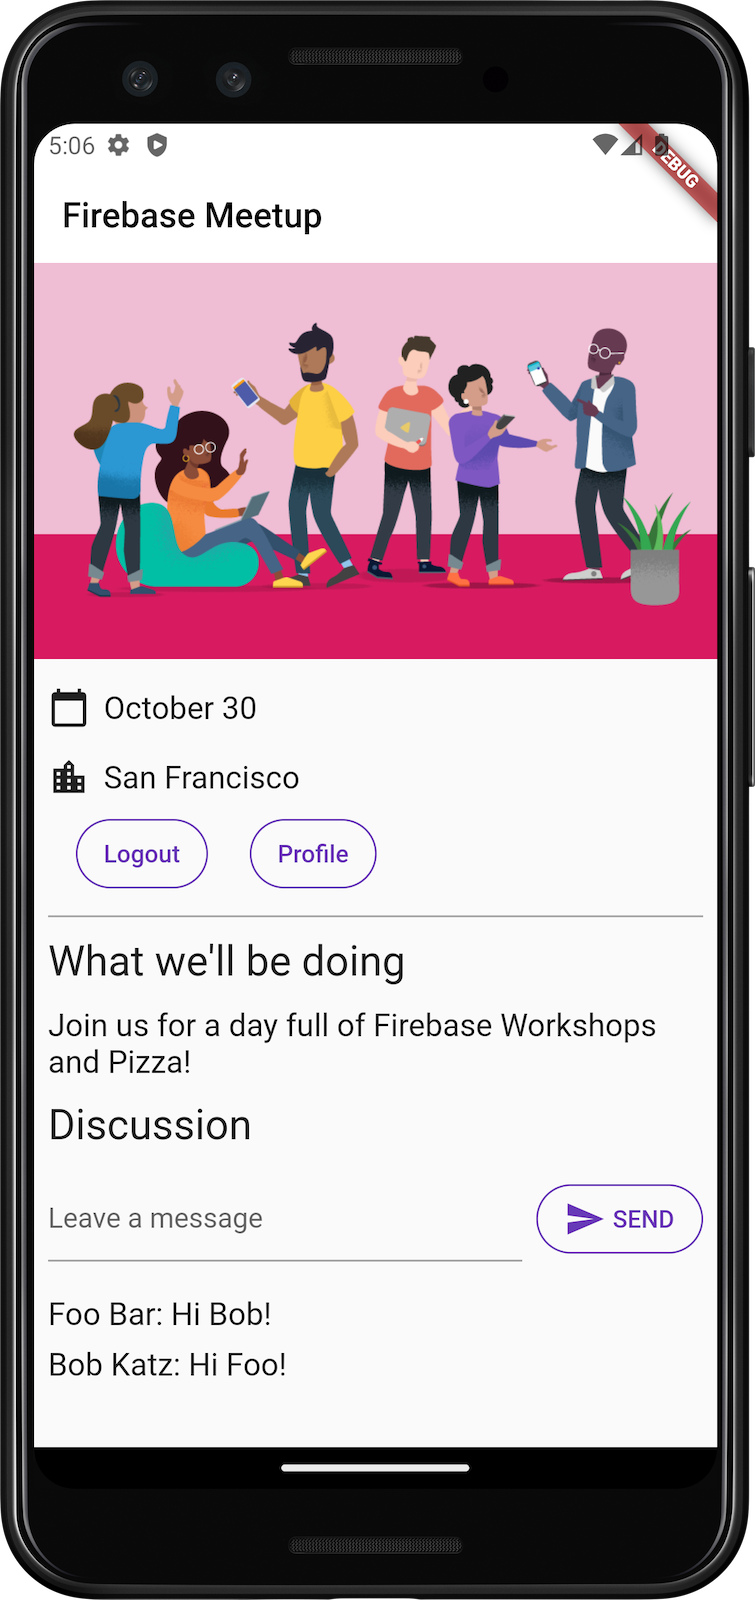 La schermata iniziale dell'app su Android con integrazione chat